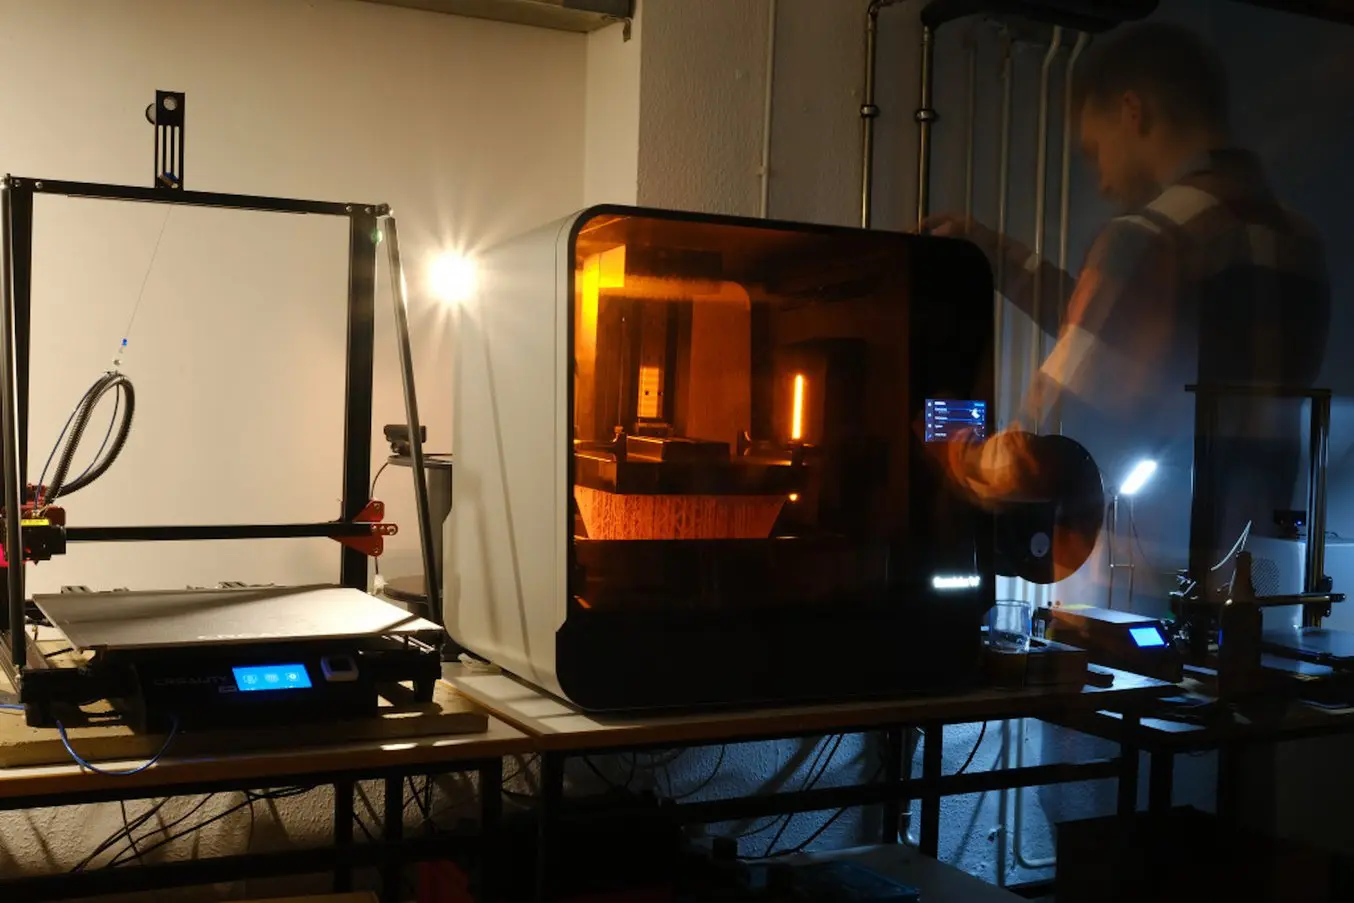 研究实验室 3D 打印机